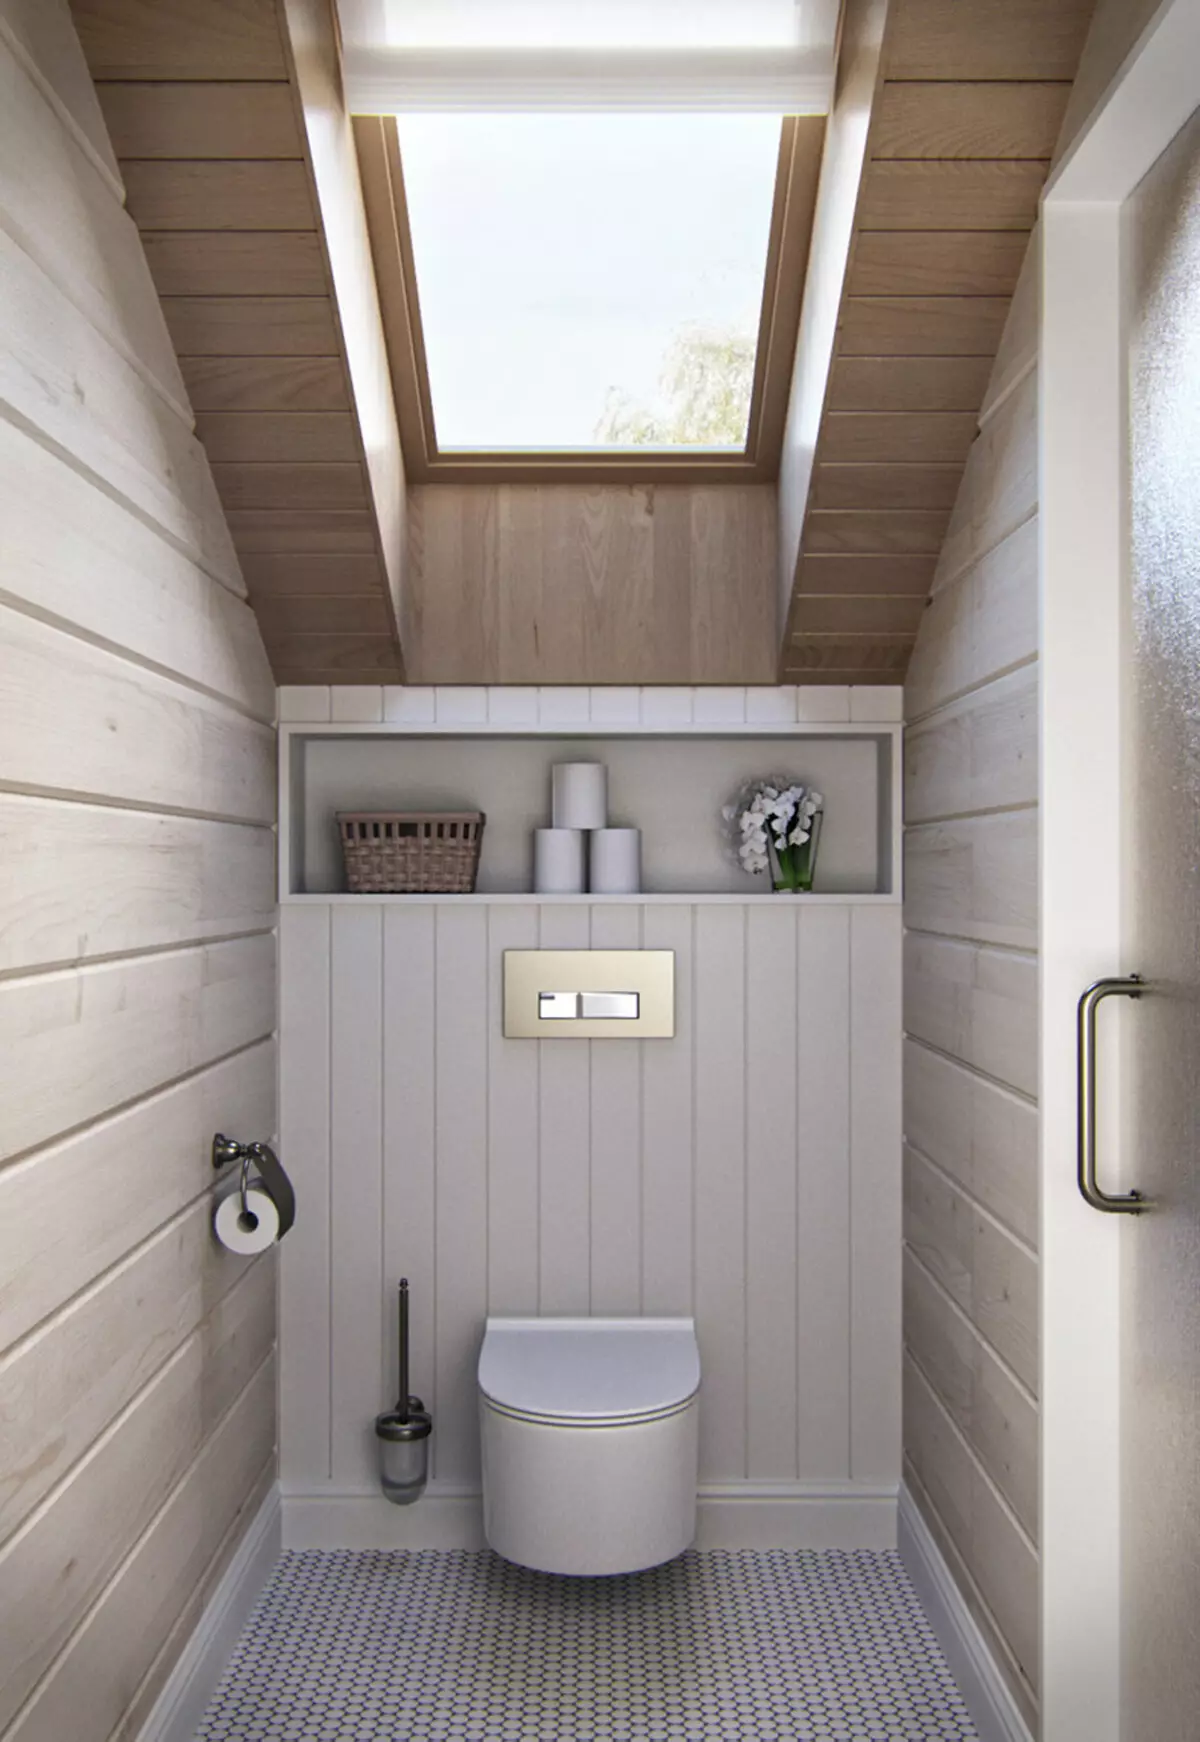 Μπάνιο σε ξύλινο σπίτι (76 φωτογραφίες): Σχεδιασμός δωματίου σε ένα σπίτι ενός μπαρ στη χώρα, παραδείγματα φινίρισμα δαπέδου, συστήματα εξαερισμού 10475_65